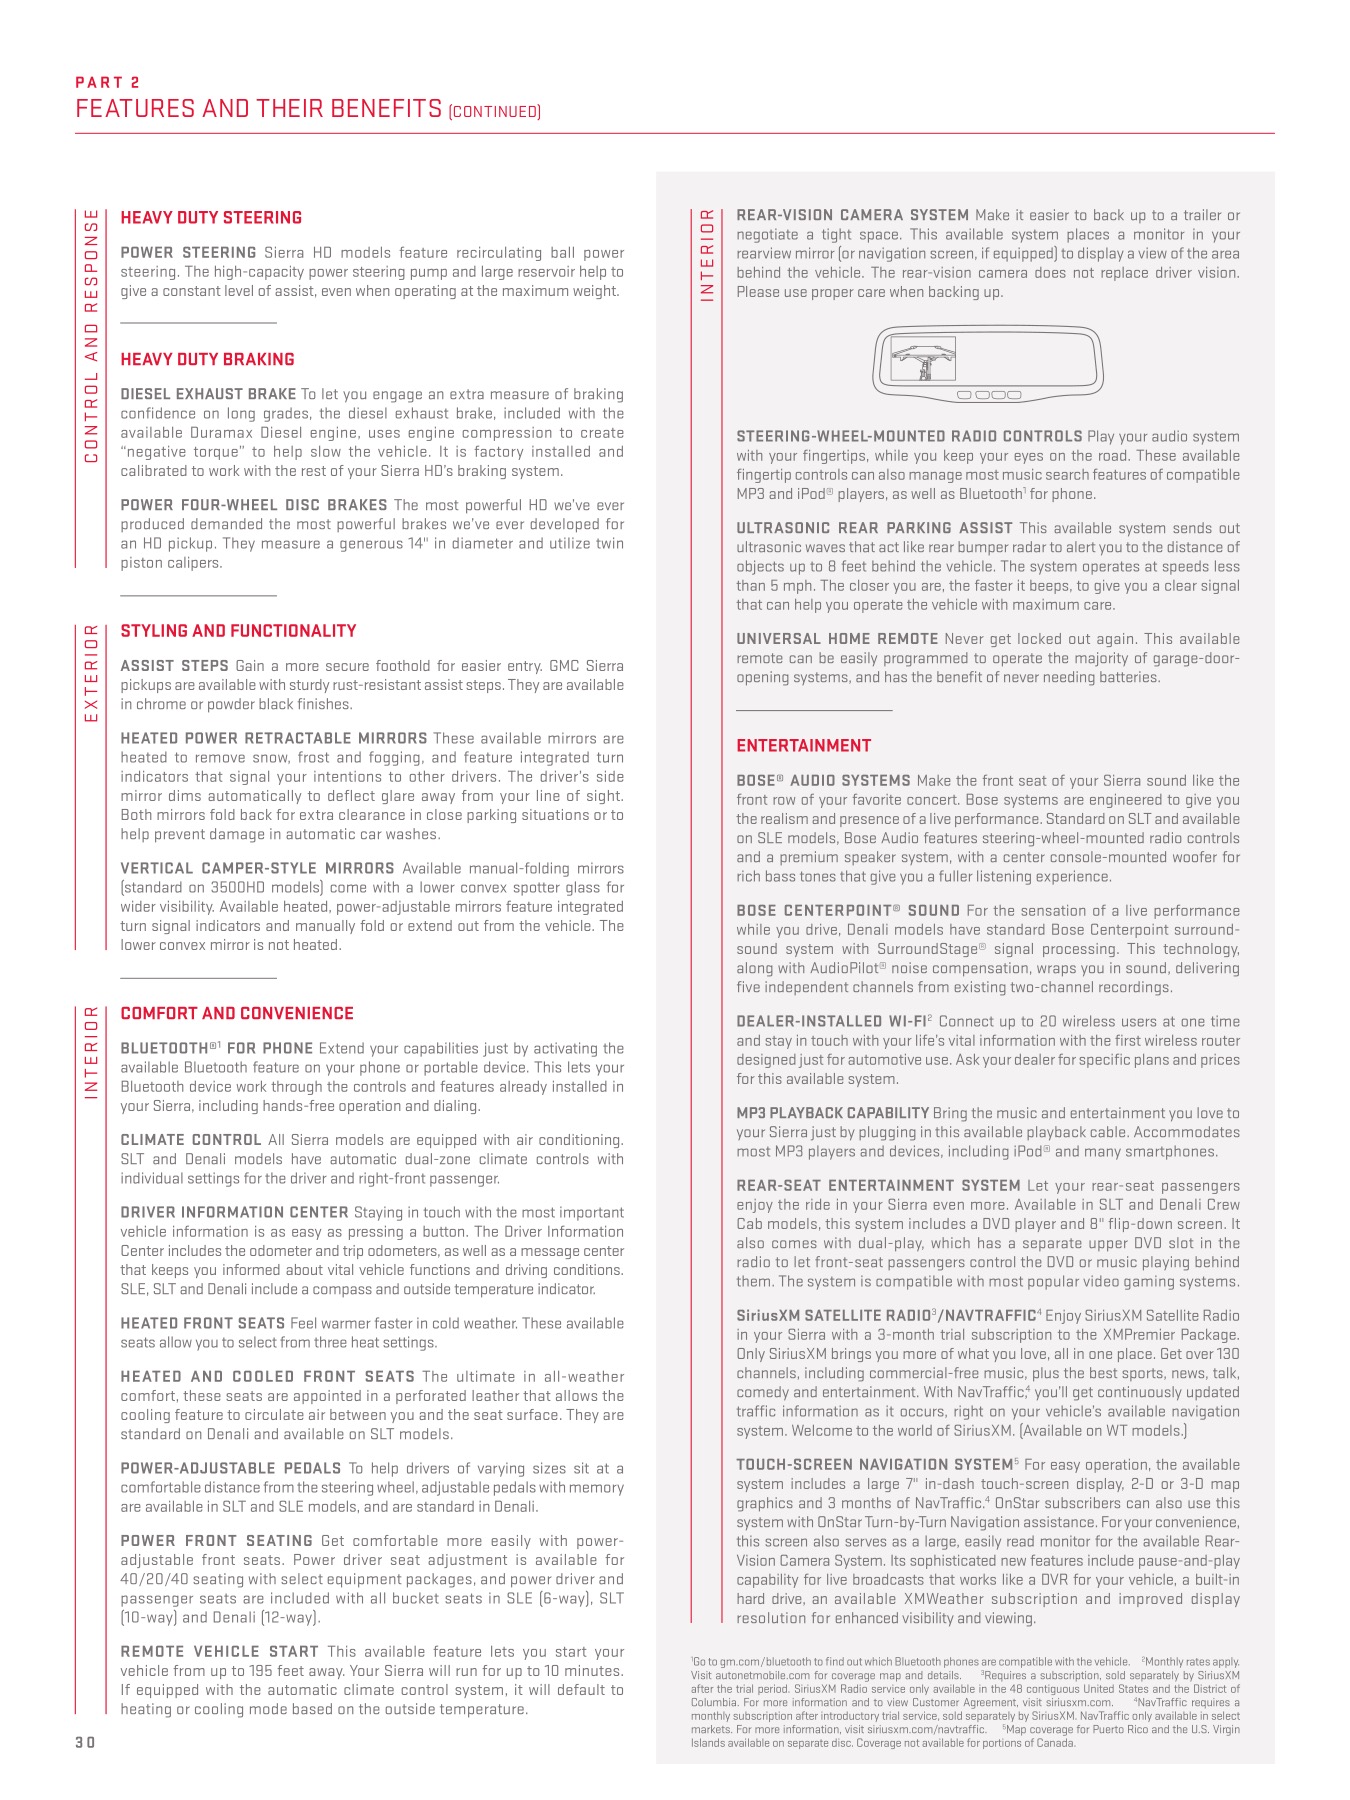 2012 GMC Sierra Brochure Page 6